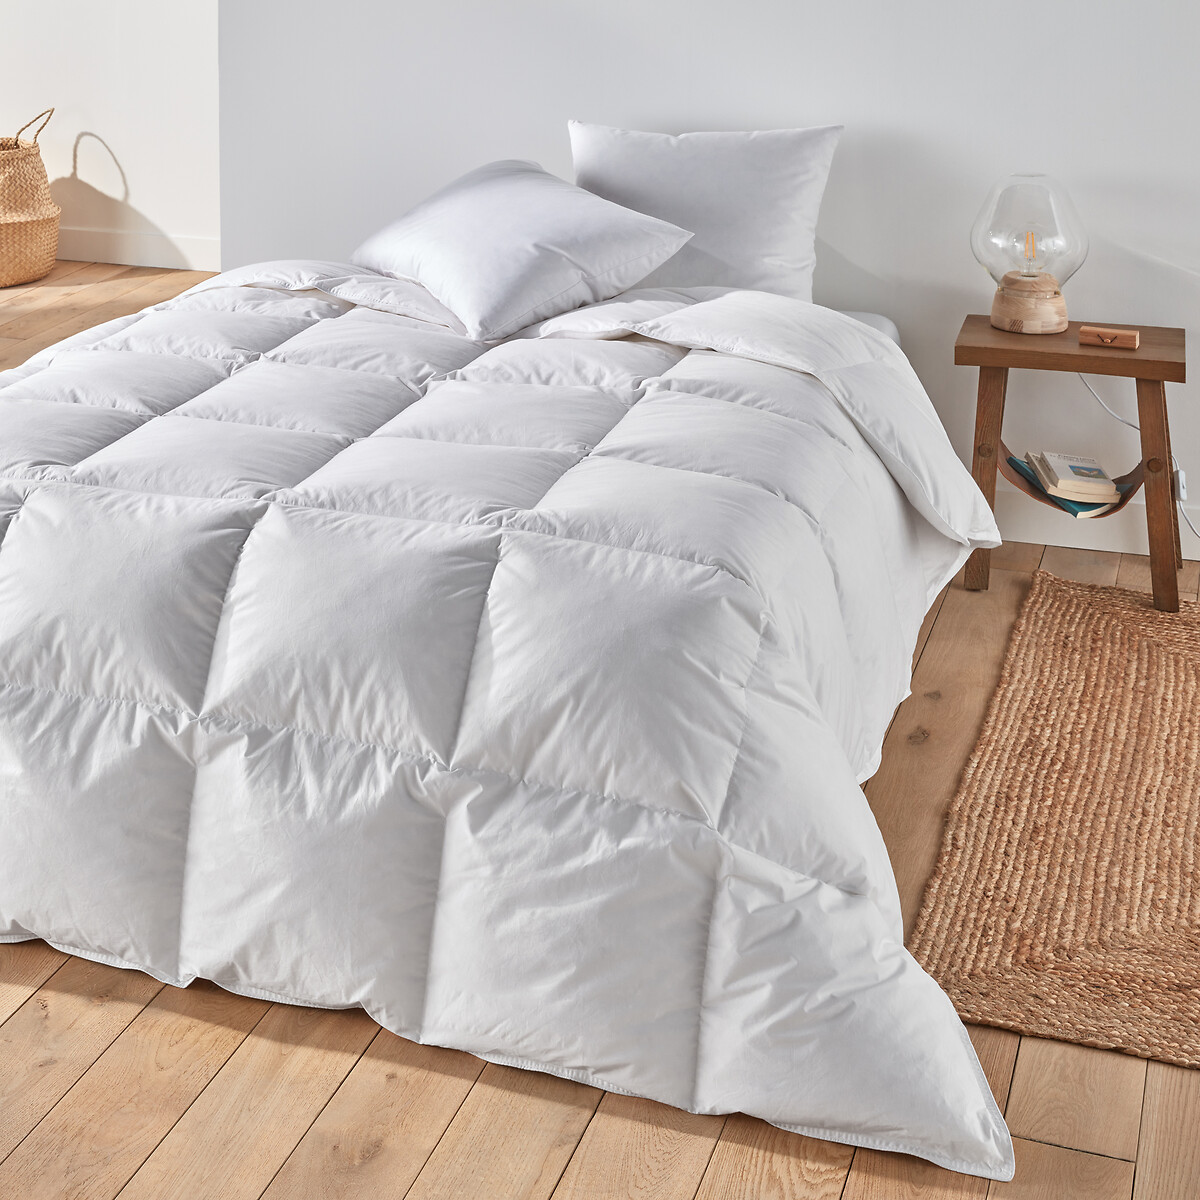 Одеяло La Redoute Натуральное для комфортного сна Теплое  пуха  перьев 200 x 200 см белый, размер 200 x 200 см - фото 1